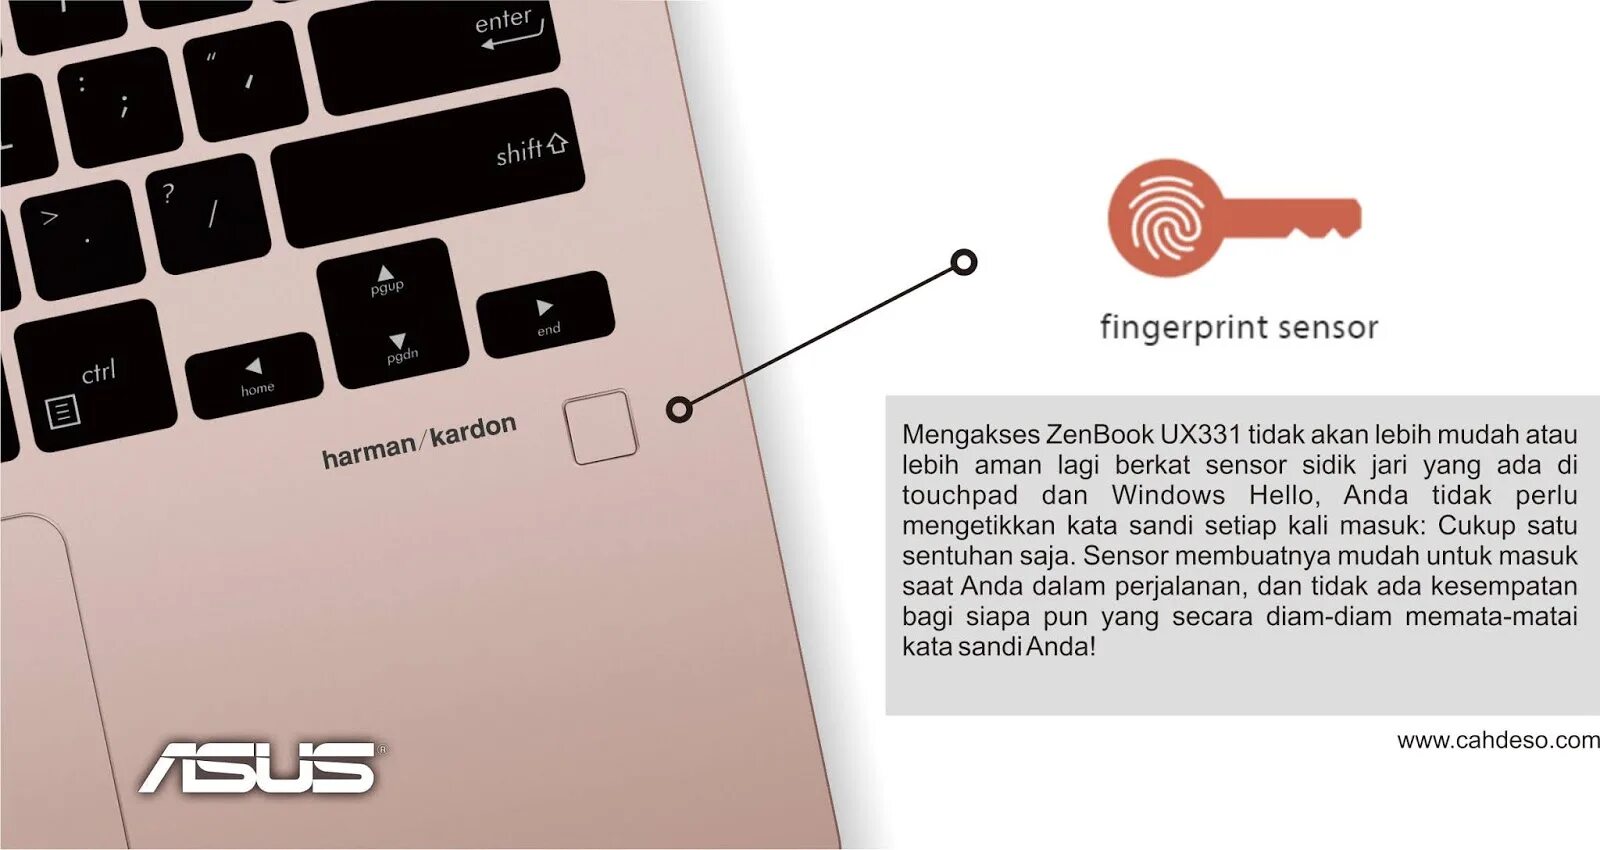 ASUS ZENBOOK датчик отпечатка пальца. Ubuntu на ASUS ZENBOOK. Как сделать Скриншот на ASUS ZENBOOK. Кнопка отключения микрофона на ноутбуке ASUS ZENBOOK.